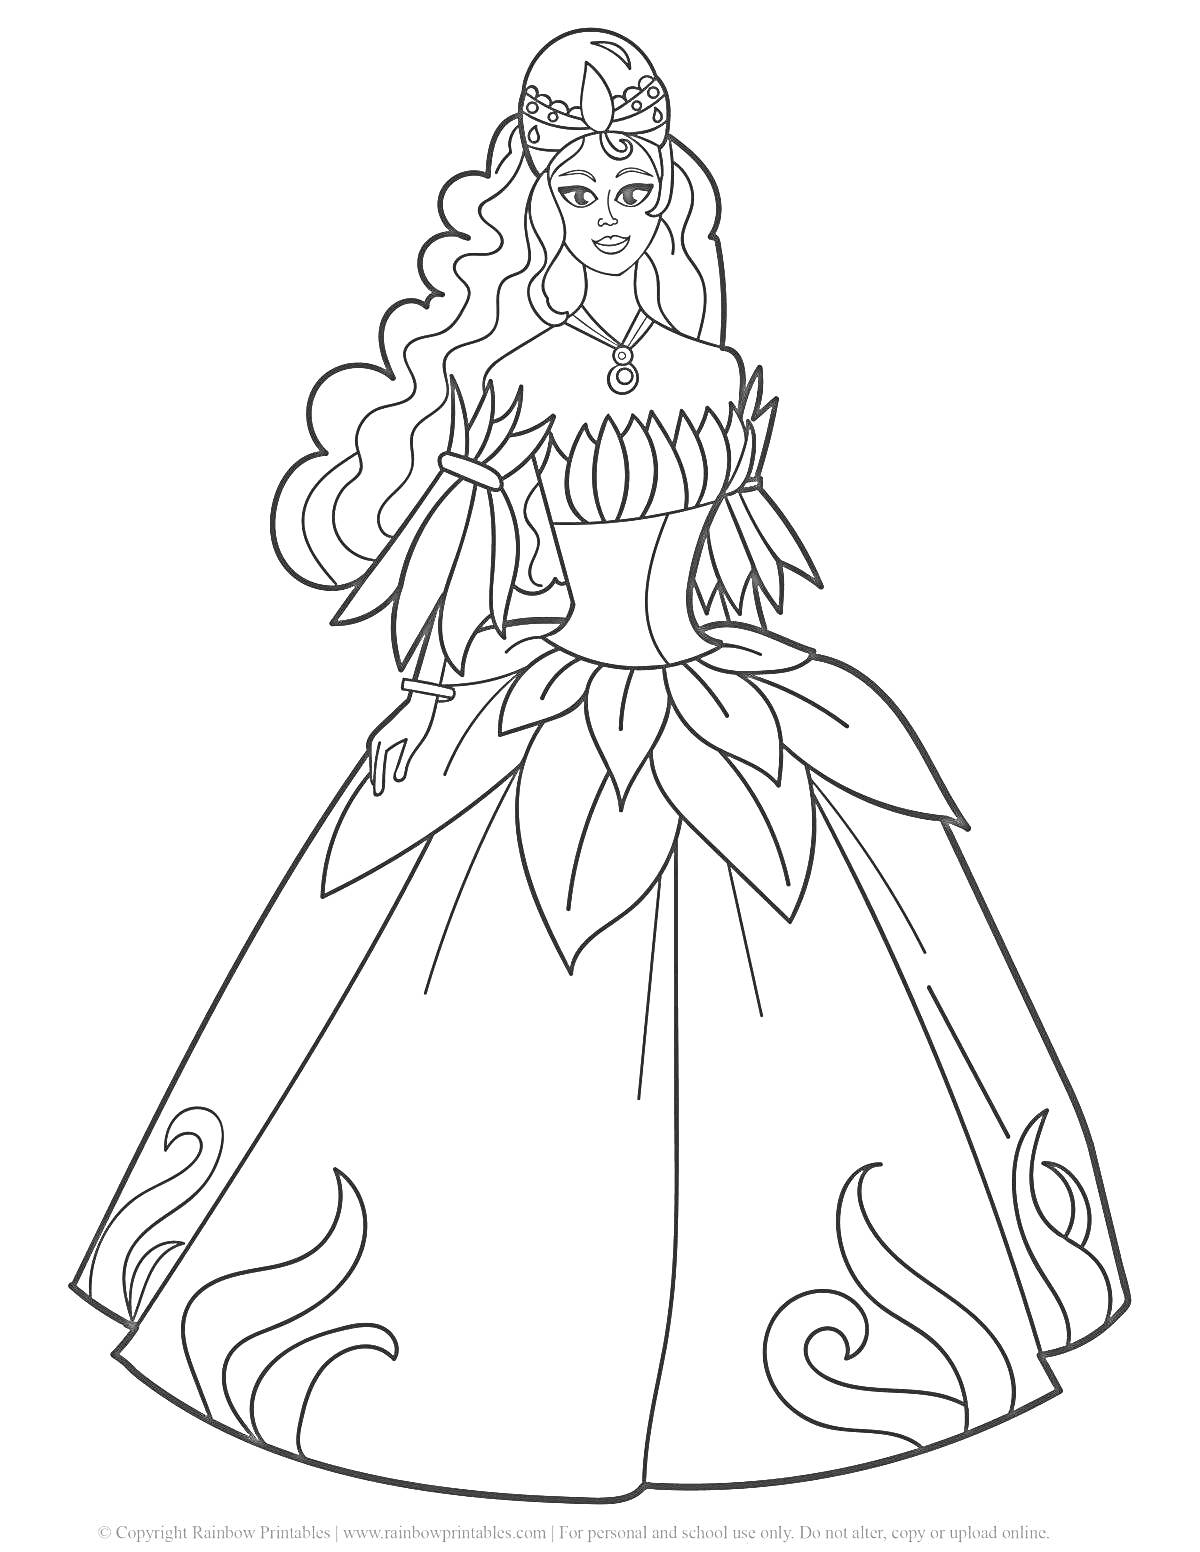 Раскраска Принцесса с длинными волосами в платье с цветочным узором и диадемой